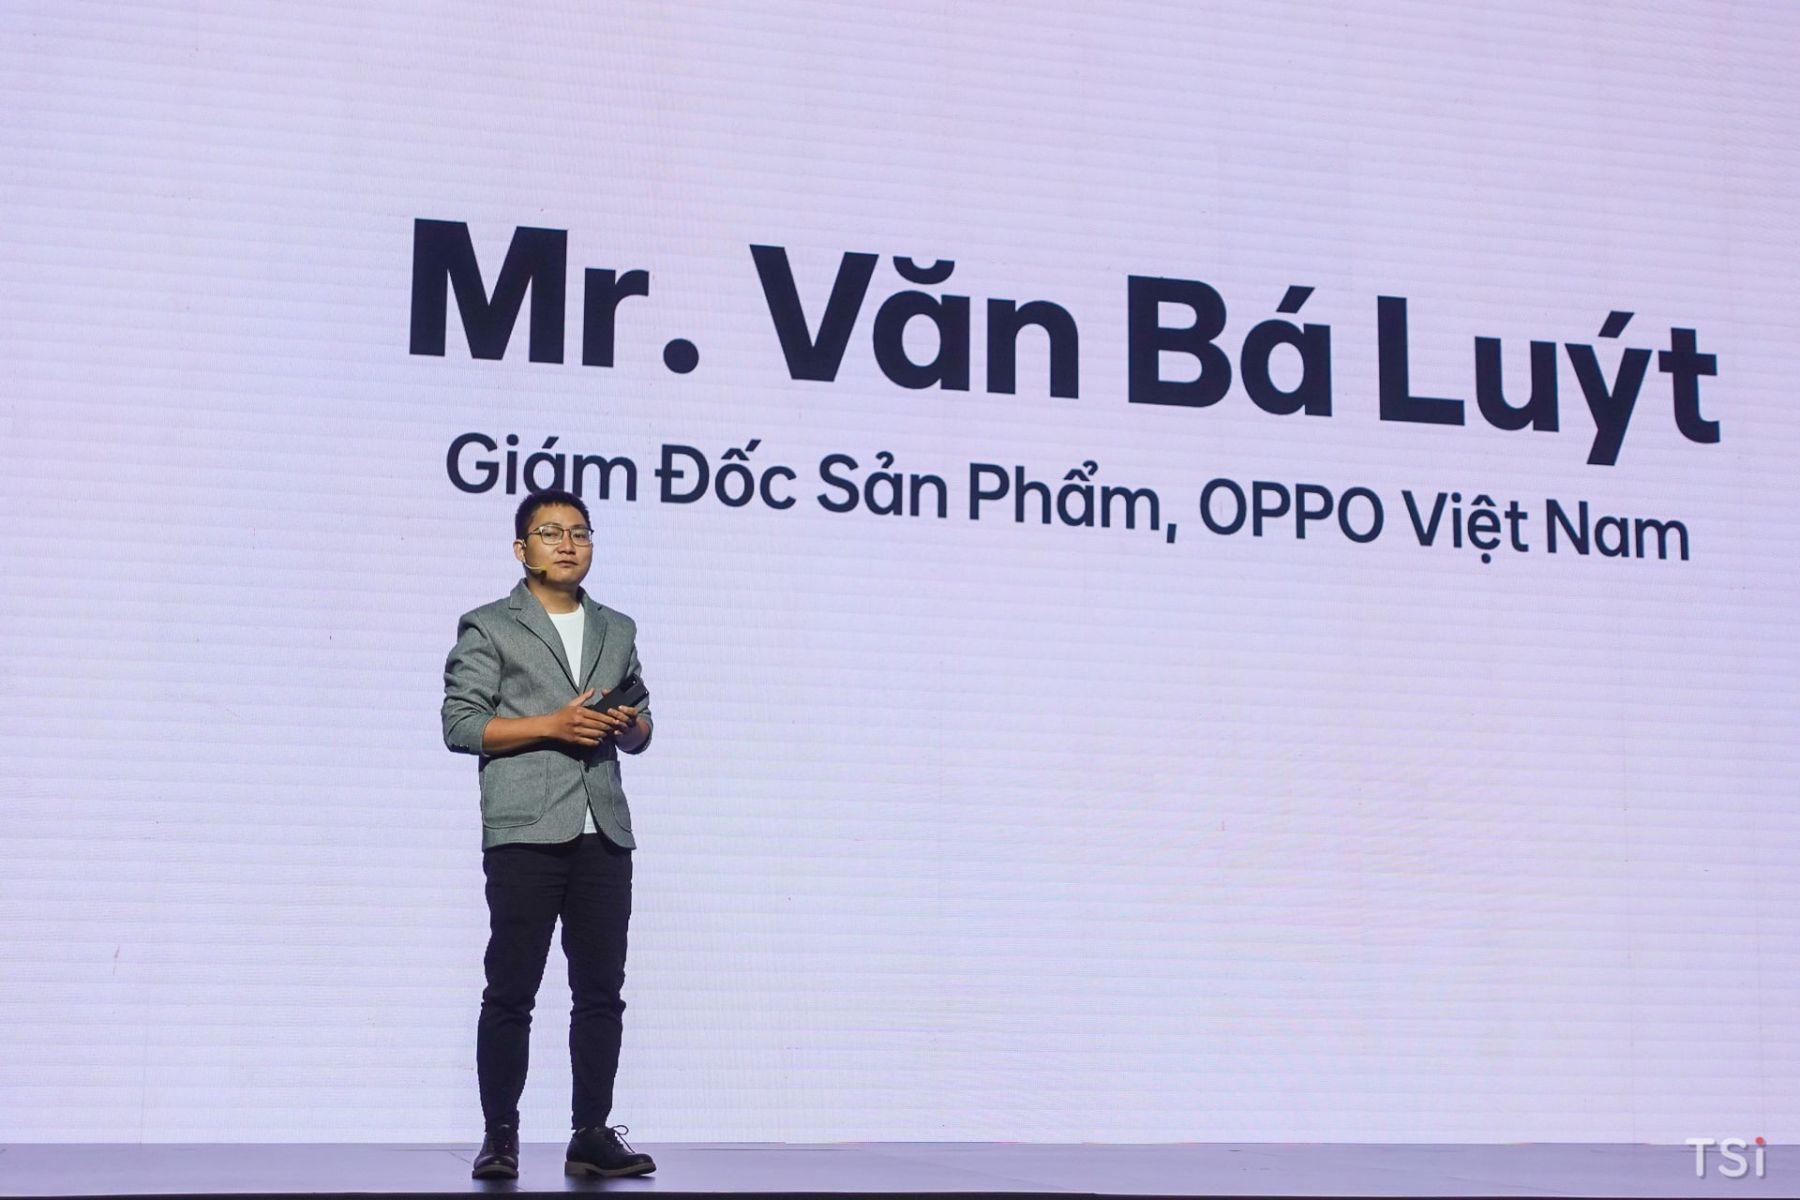 Giám đốc Sản phẩm của OPPO Việt Nam, ông Văn Bá Luýt